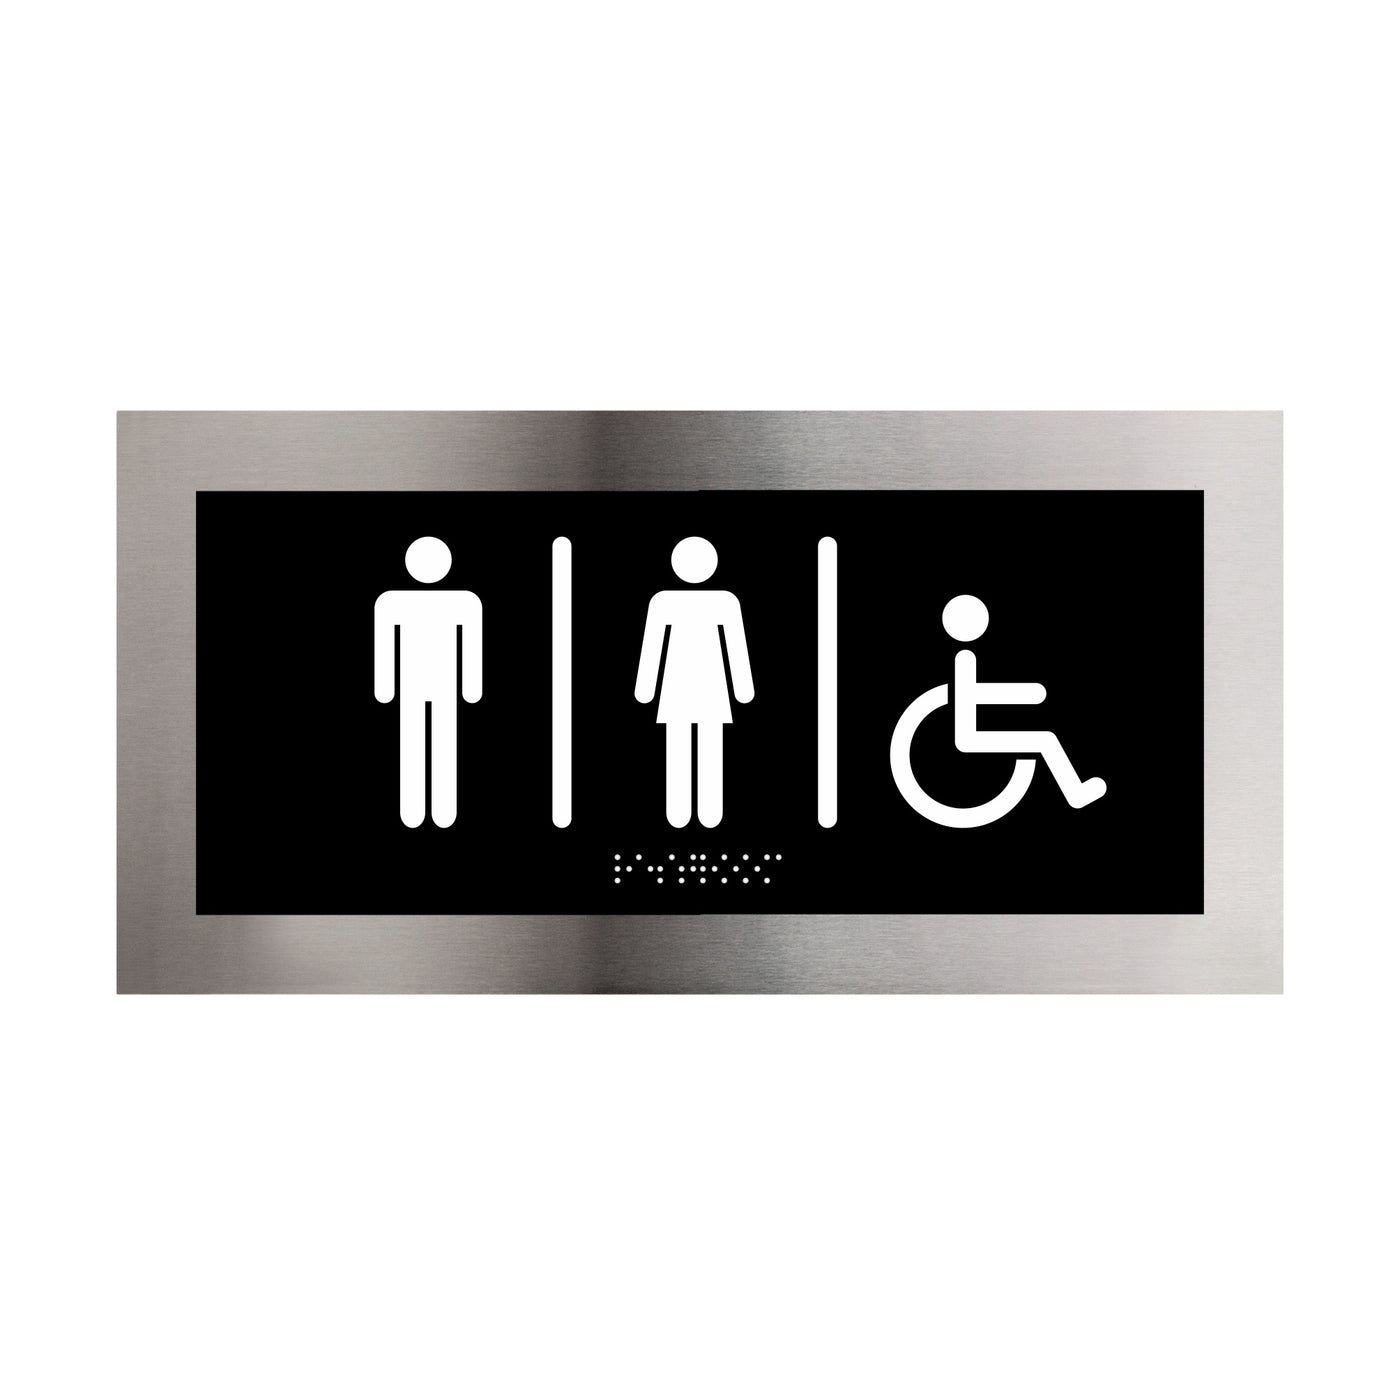 All Gender Unisex Restroom Sign "Modern" Design